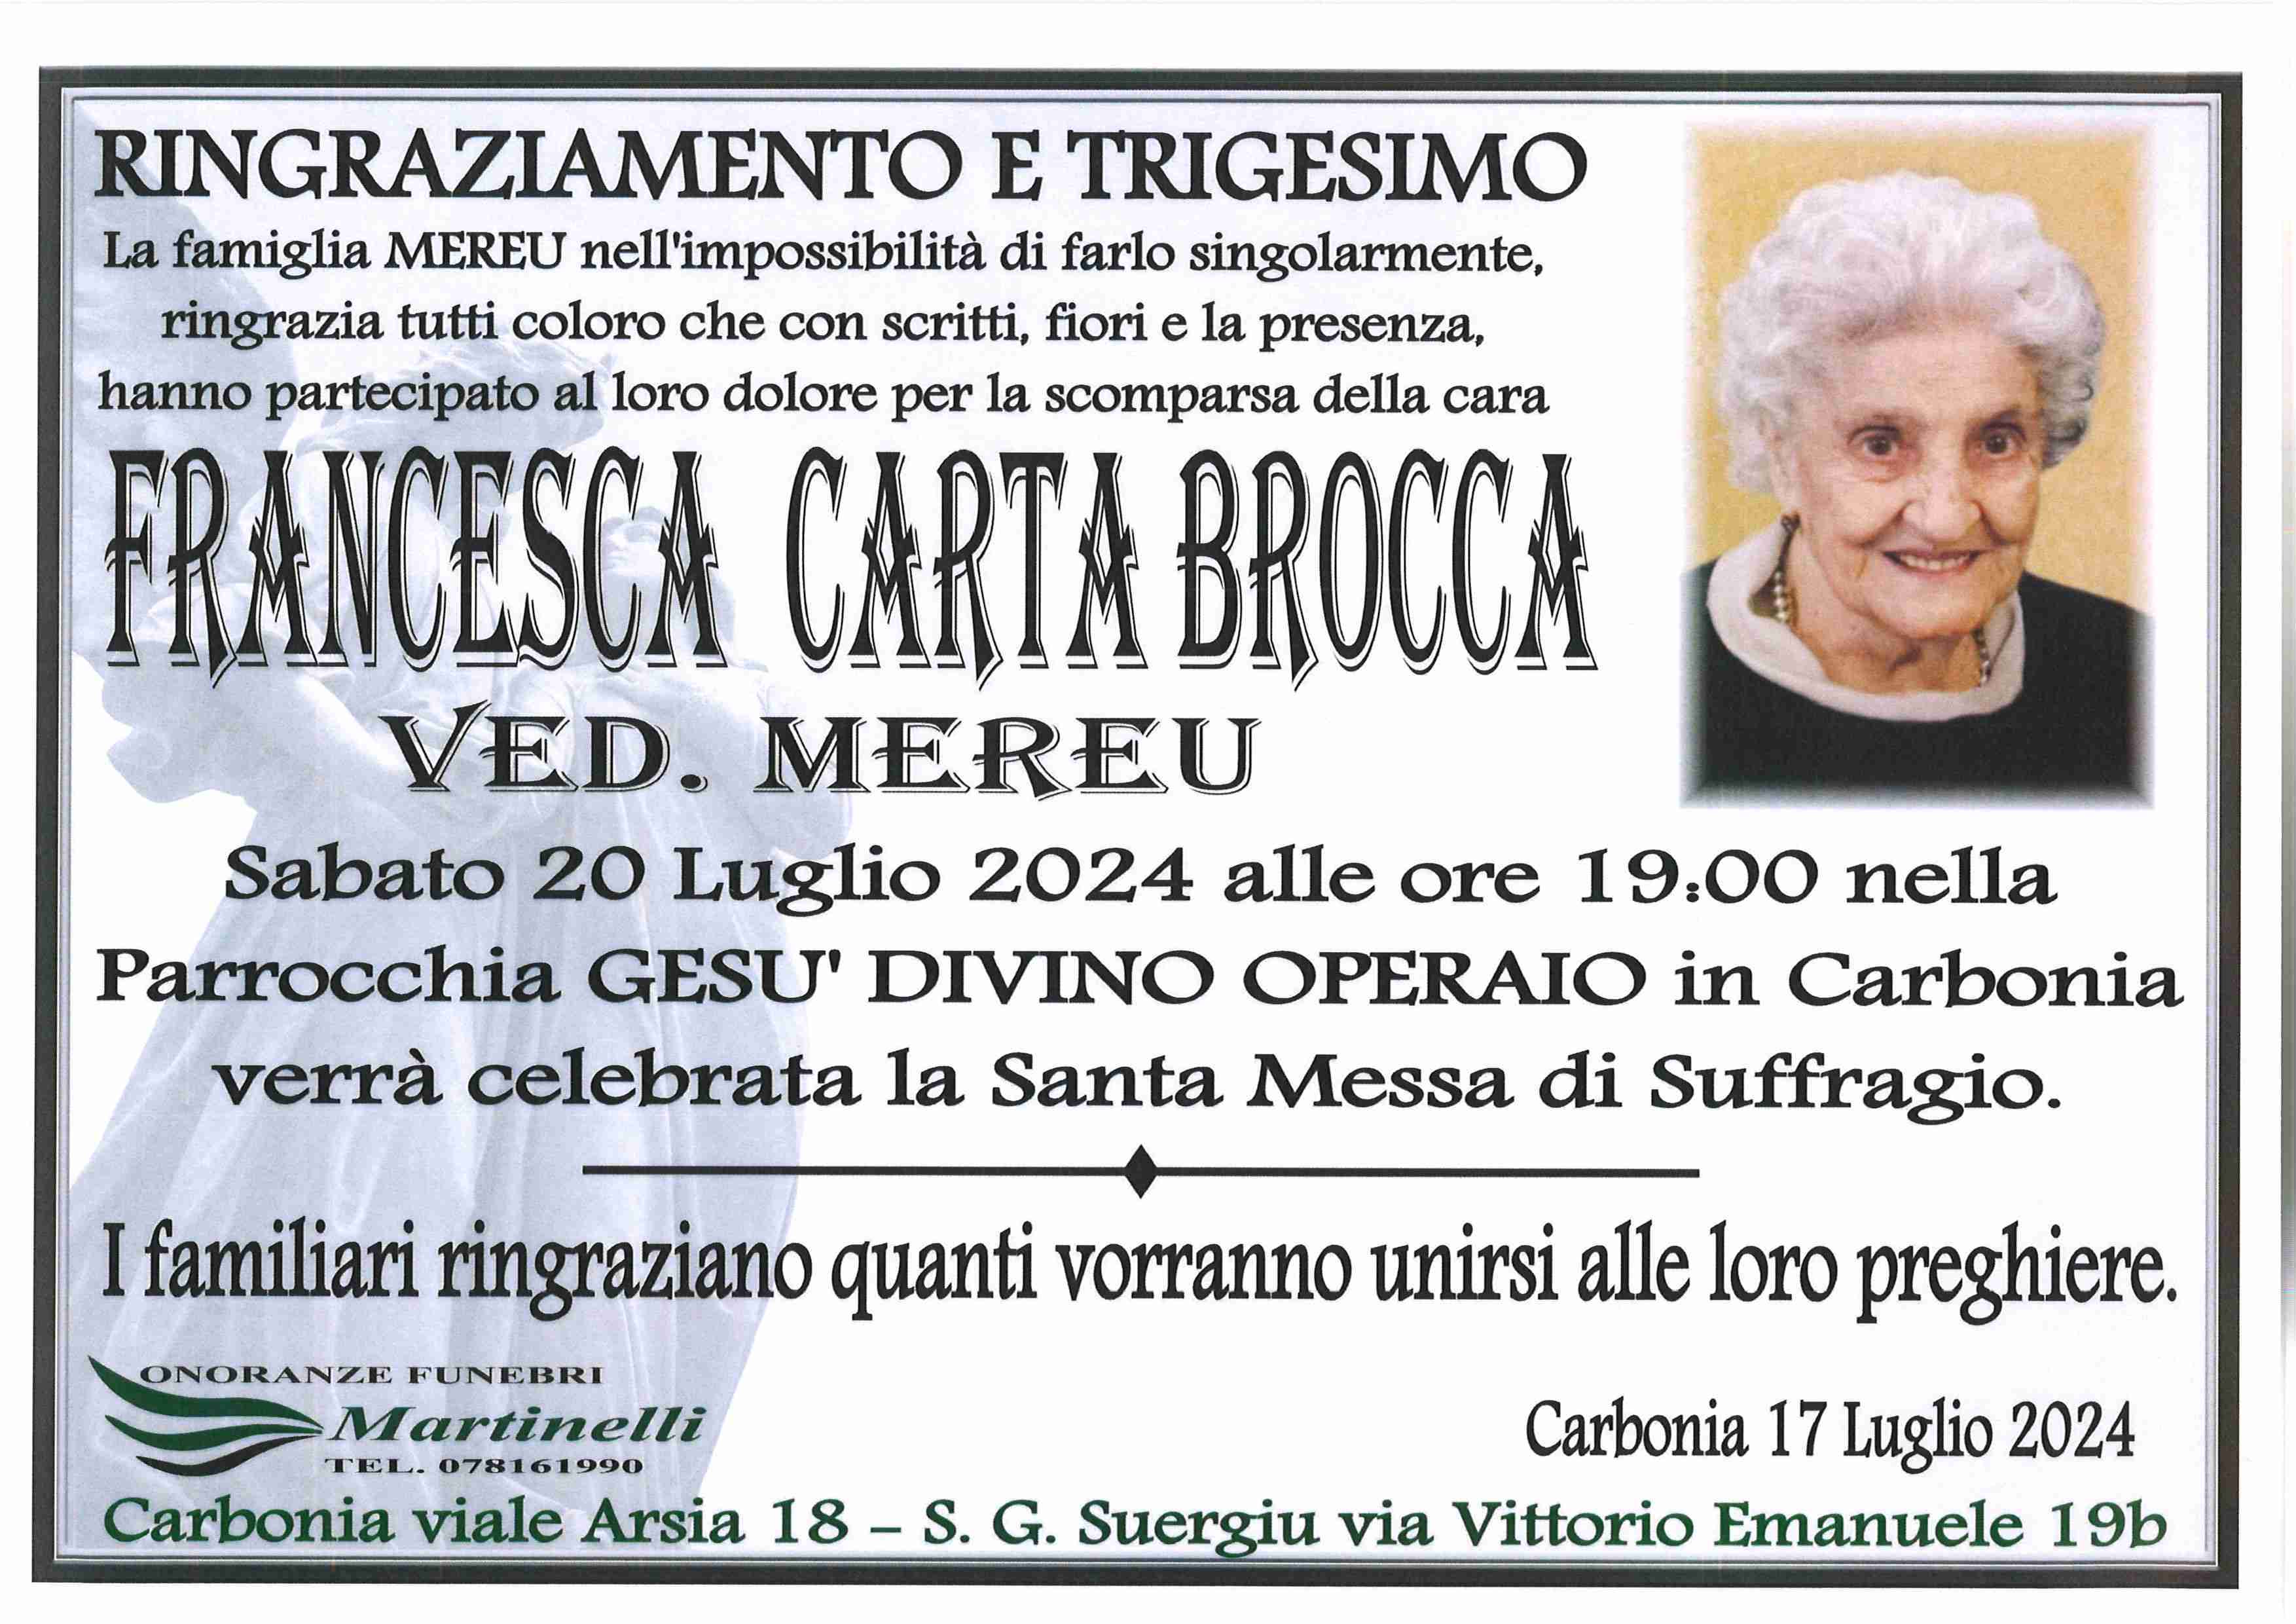 Francesca Carta Brocca